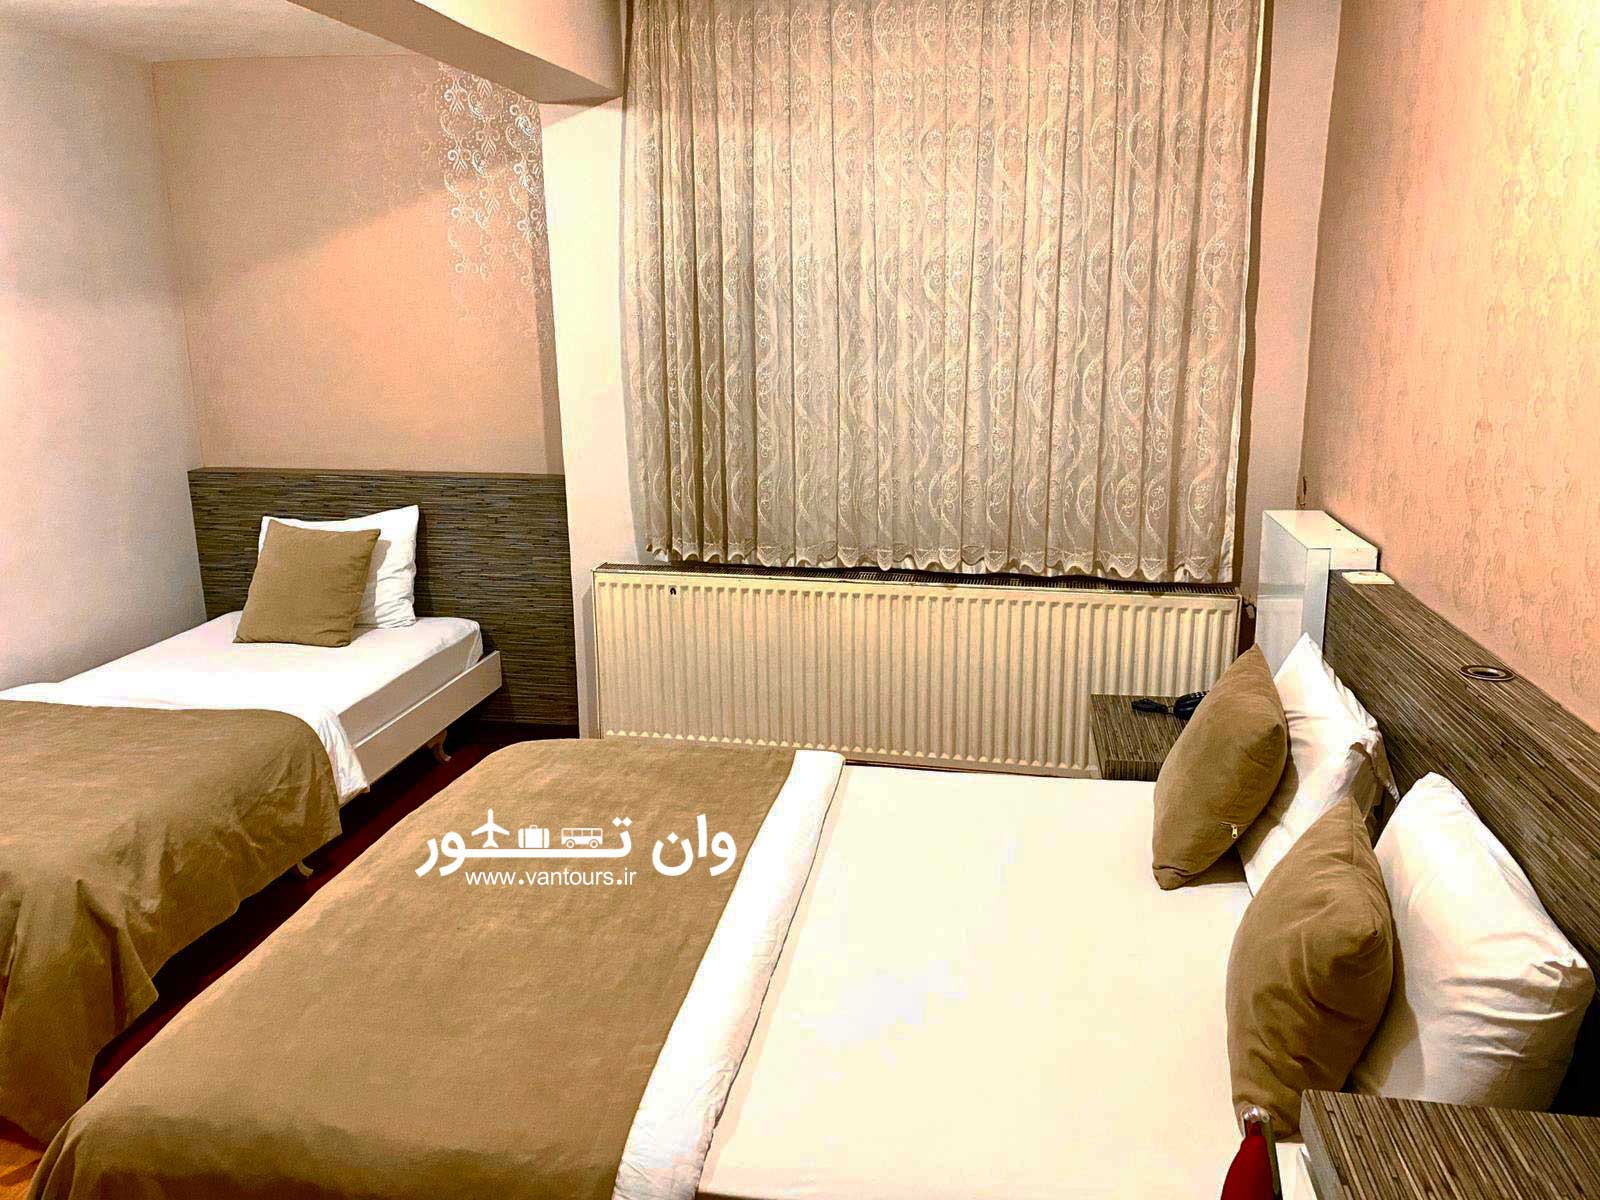 هتل سمیرا در وان ترکیه – samira hotel